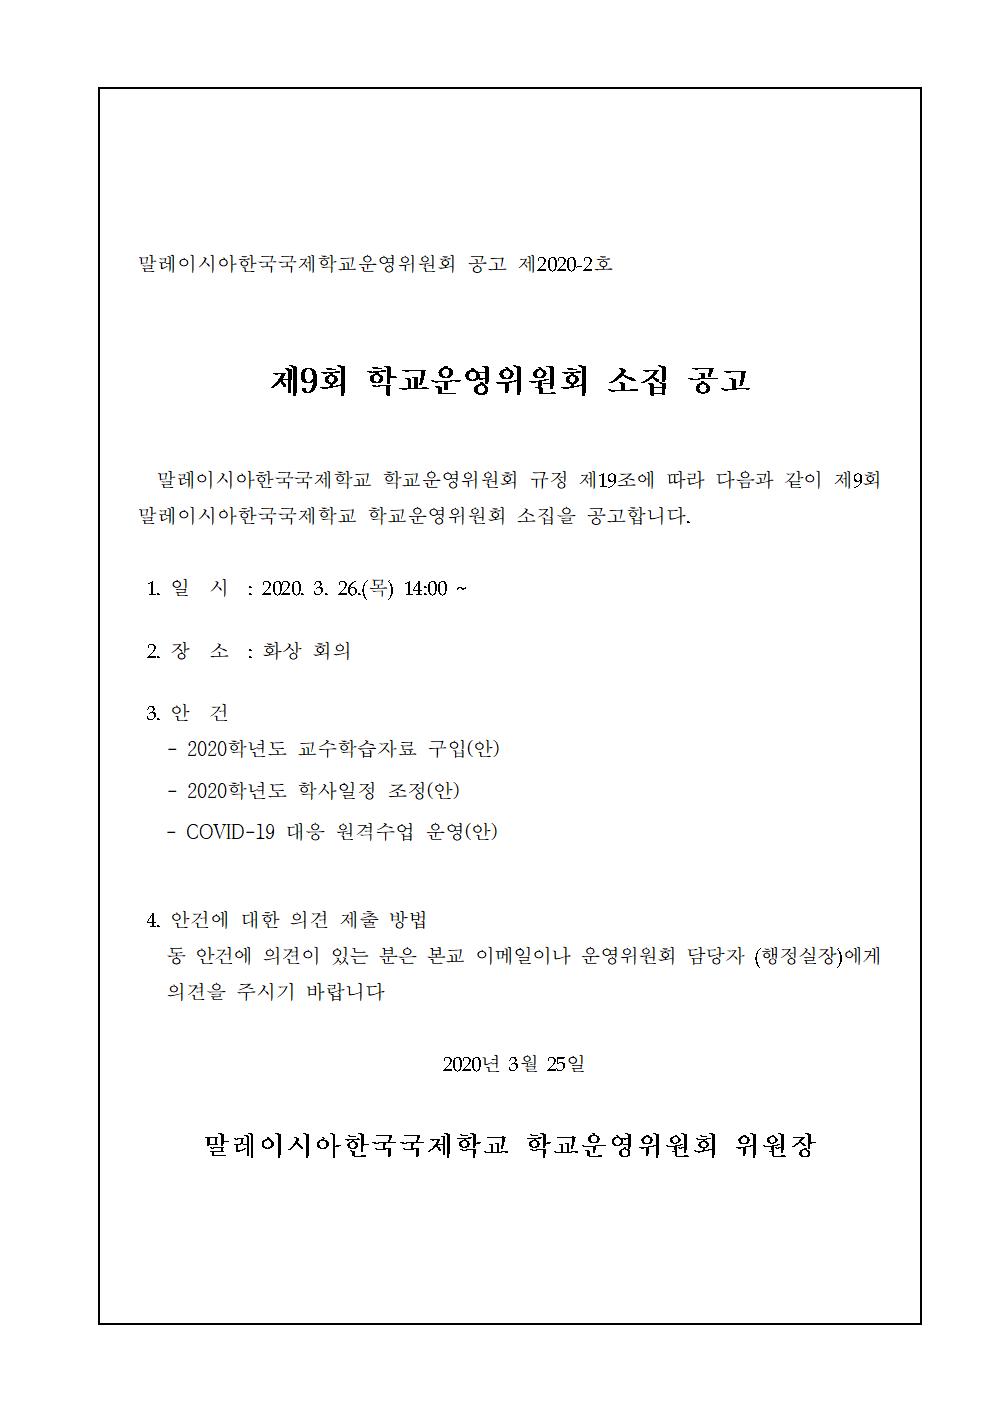 2019-9운영위원회 임시회 개최 알림(시행문)002.jpg